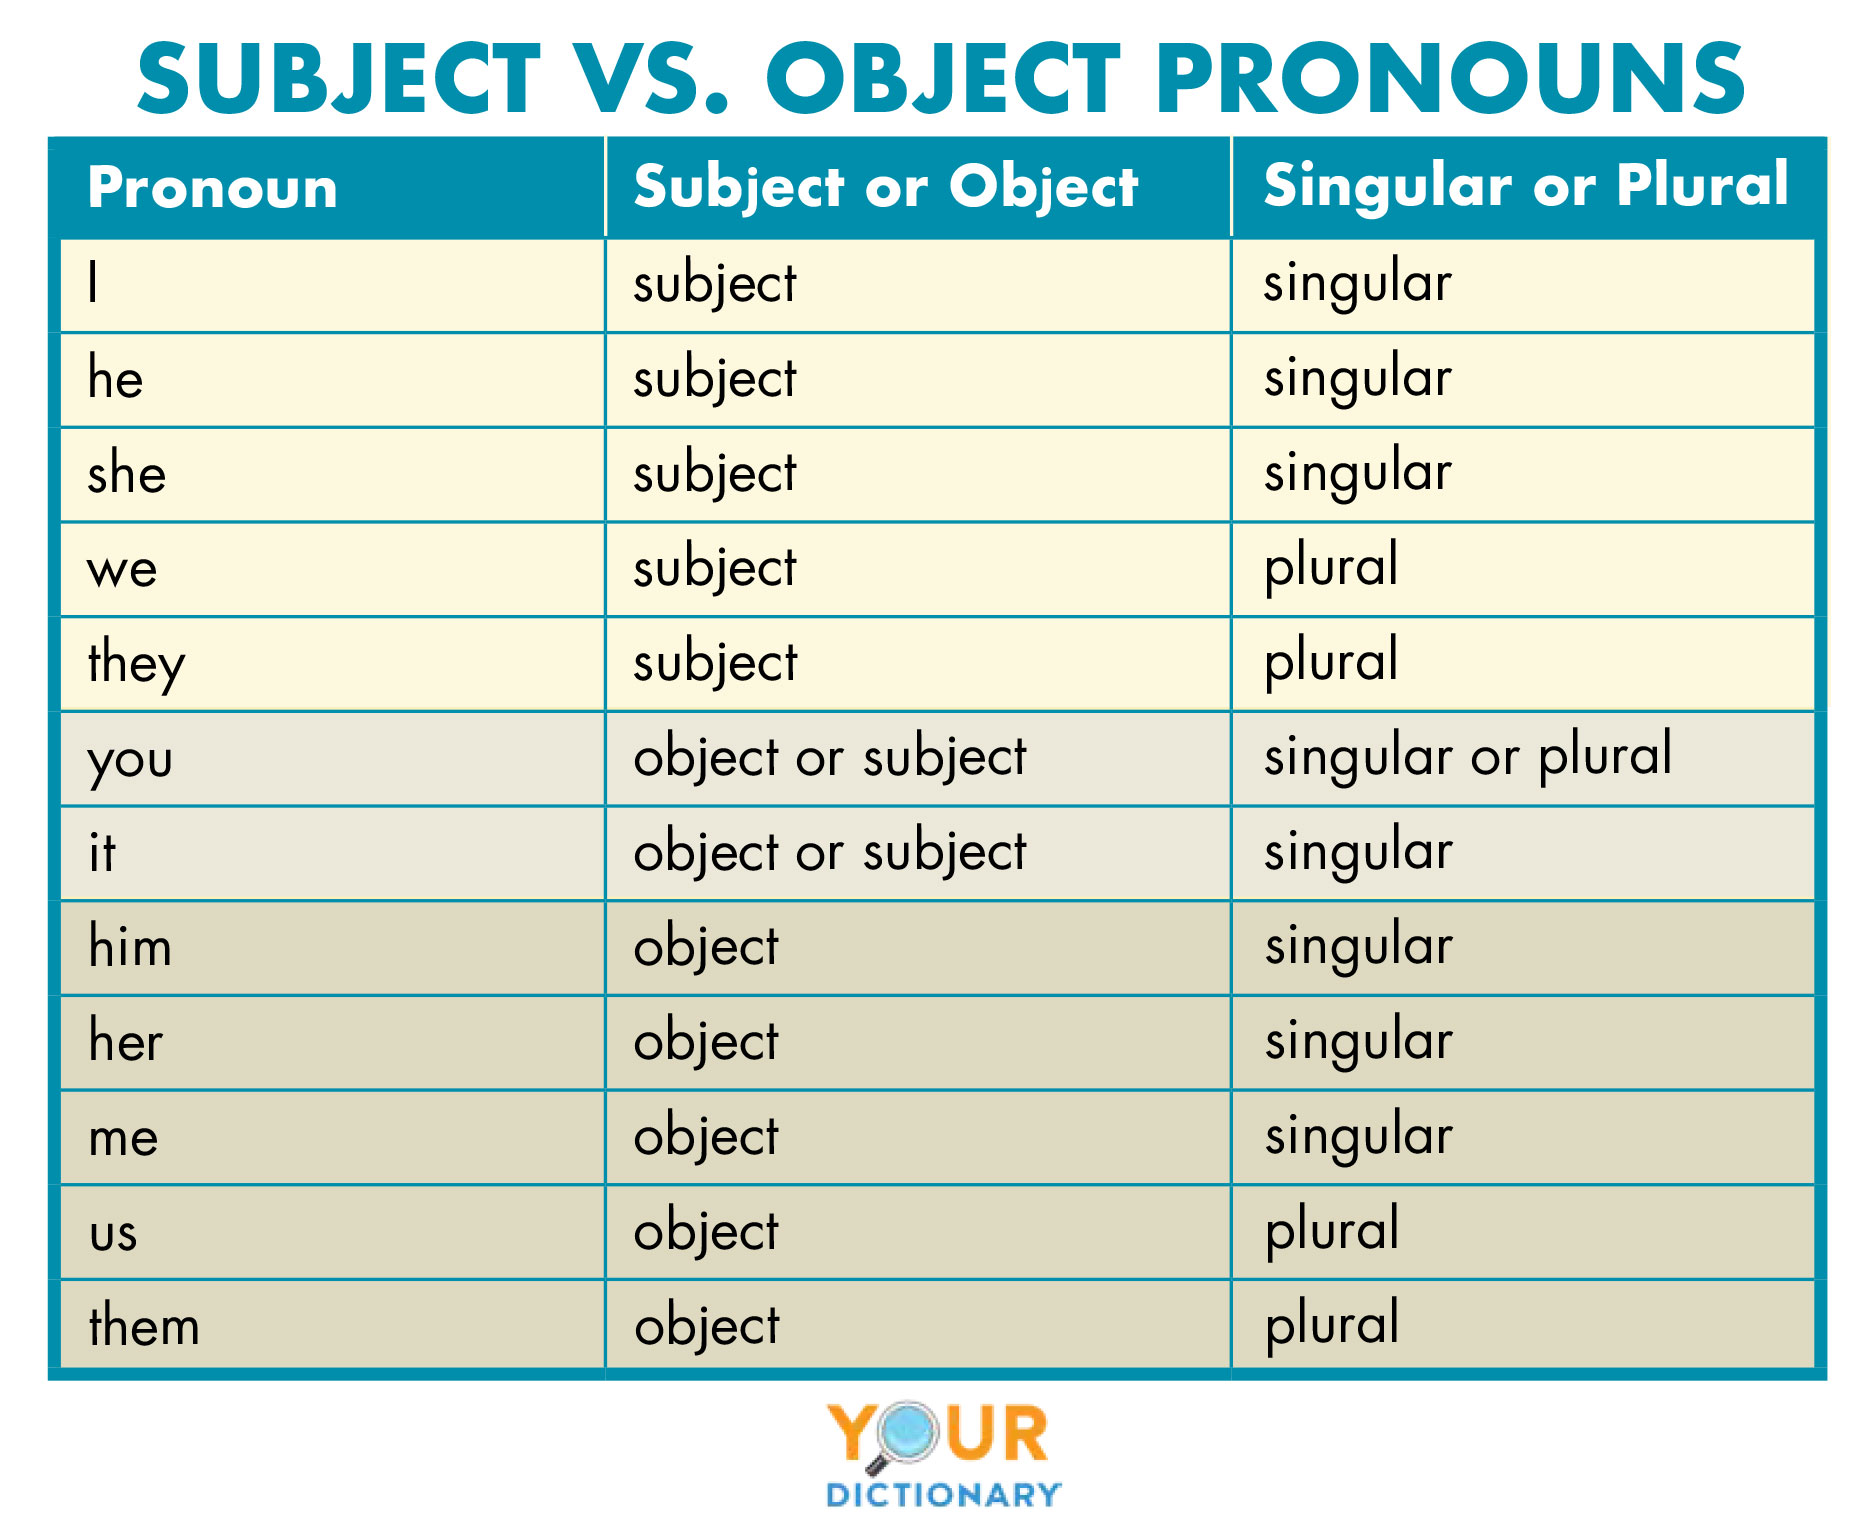 subject vs. object pronouns table